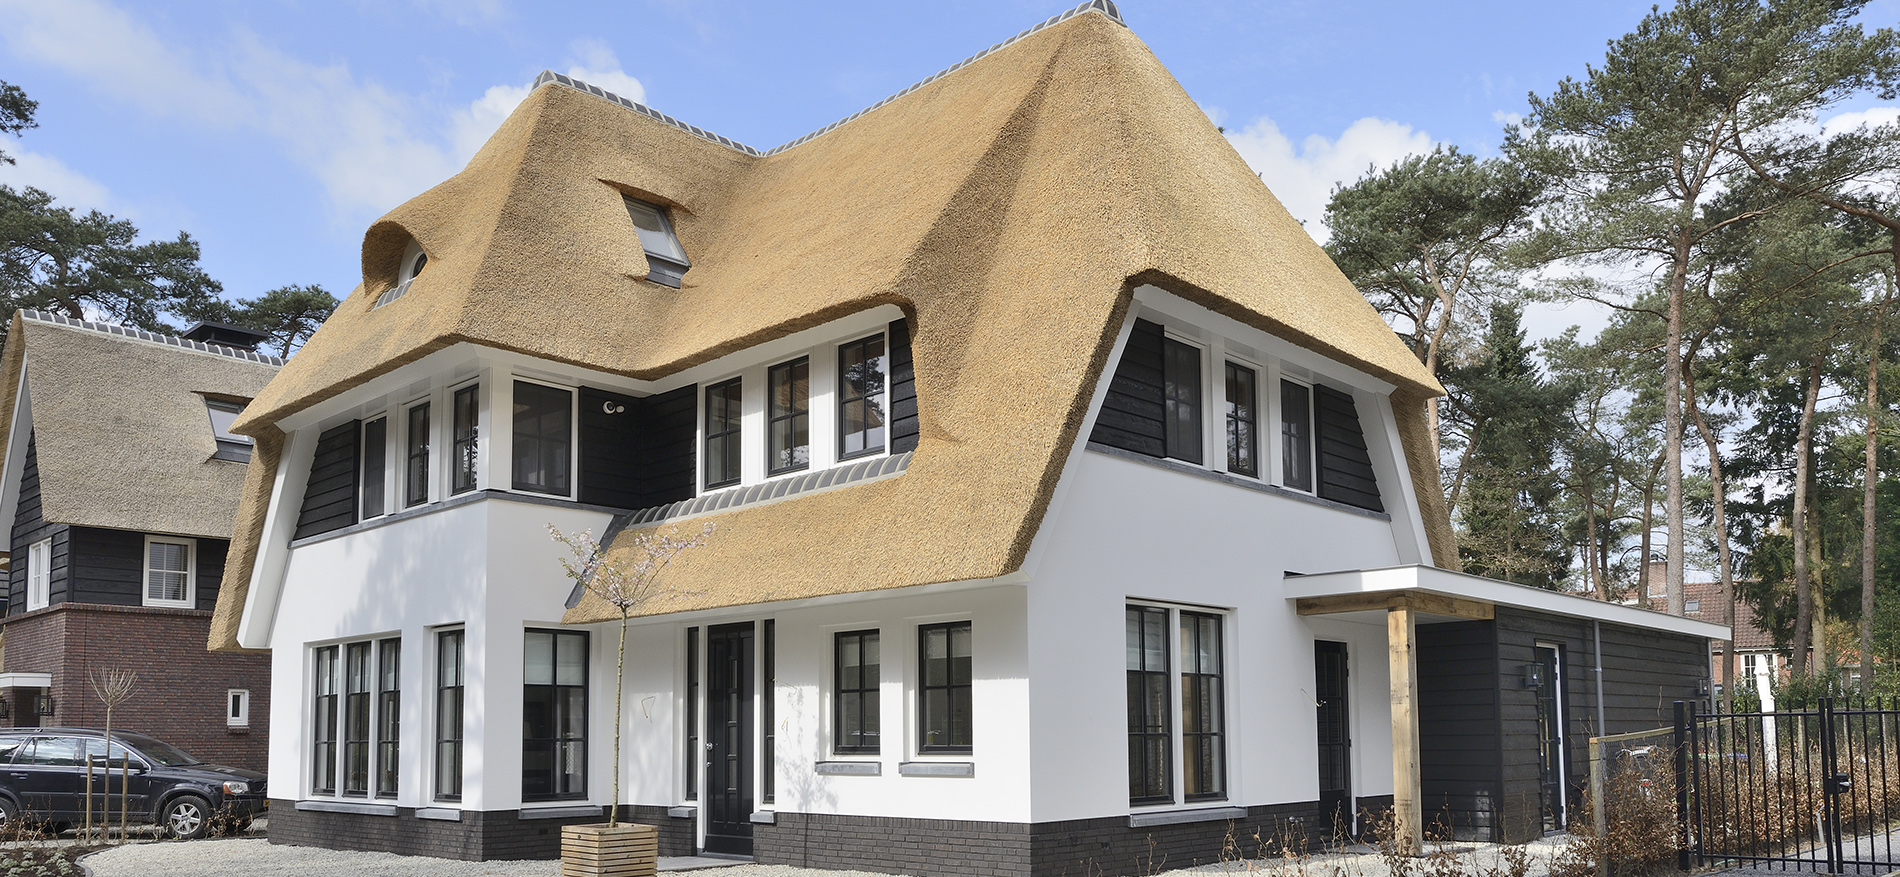 Home in Zeist Kerkebosch - Residential Interior Design